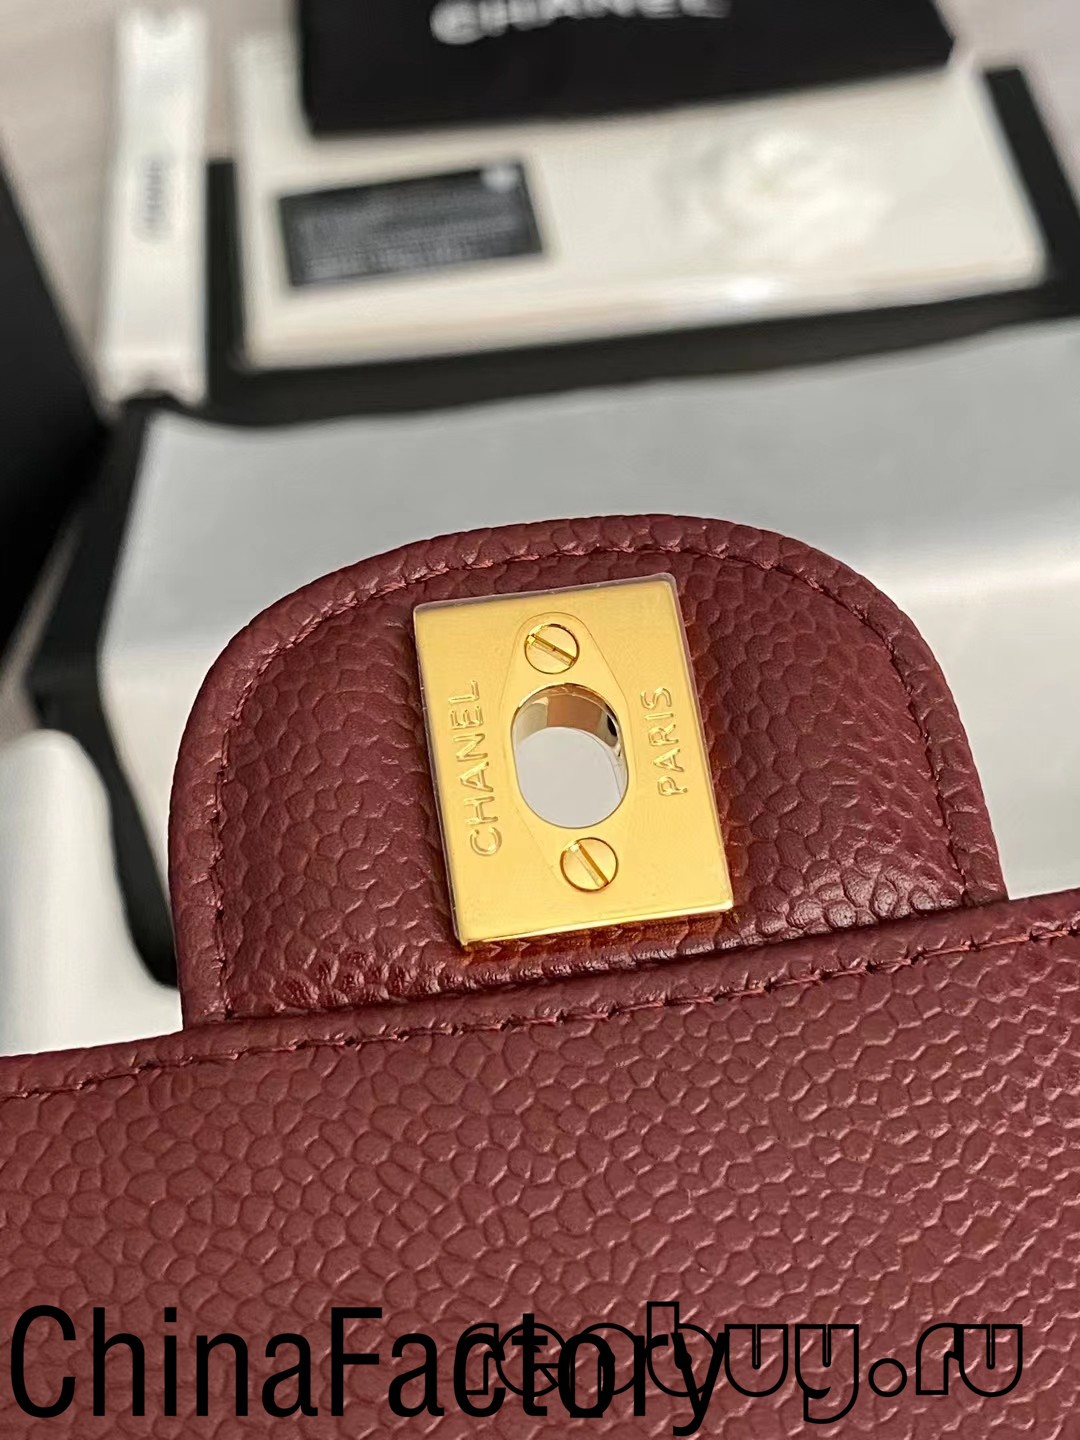 Wêr kin ik keapje de bêste replika tassen yn Austraalje? (2022 update) -Bêste kwaliteit Fake Louis Vuitton Bag Online Store, Replika ûntwerper tas ru